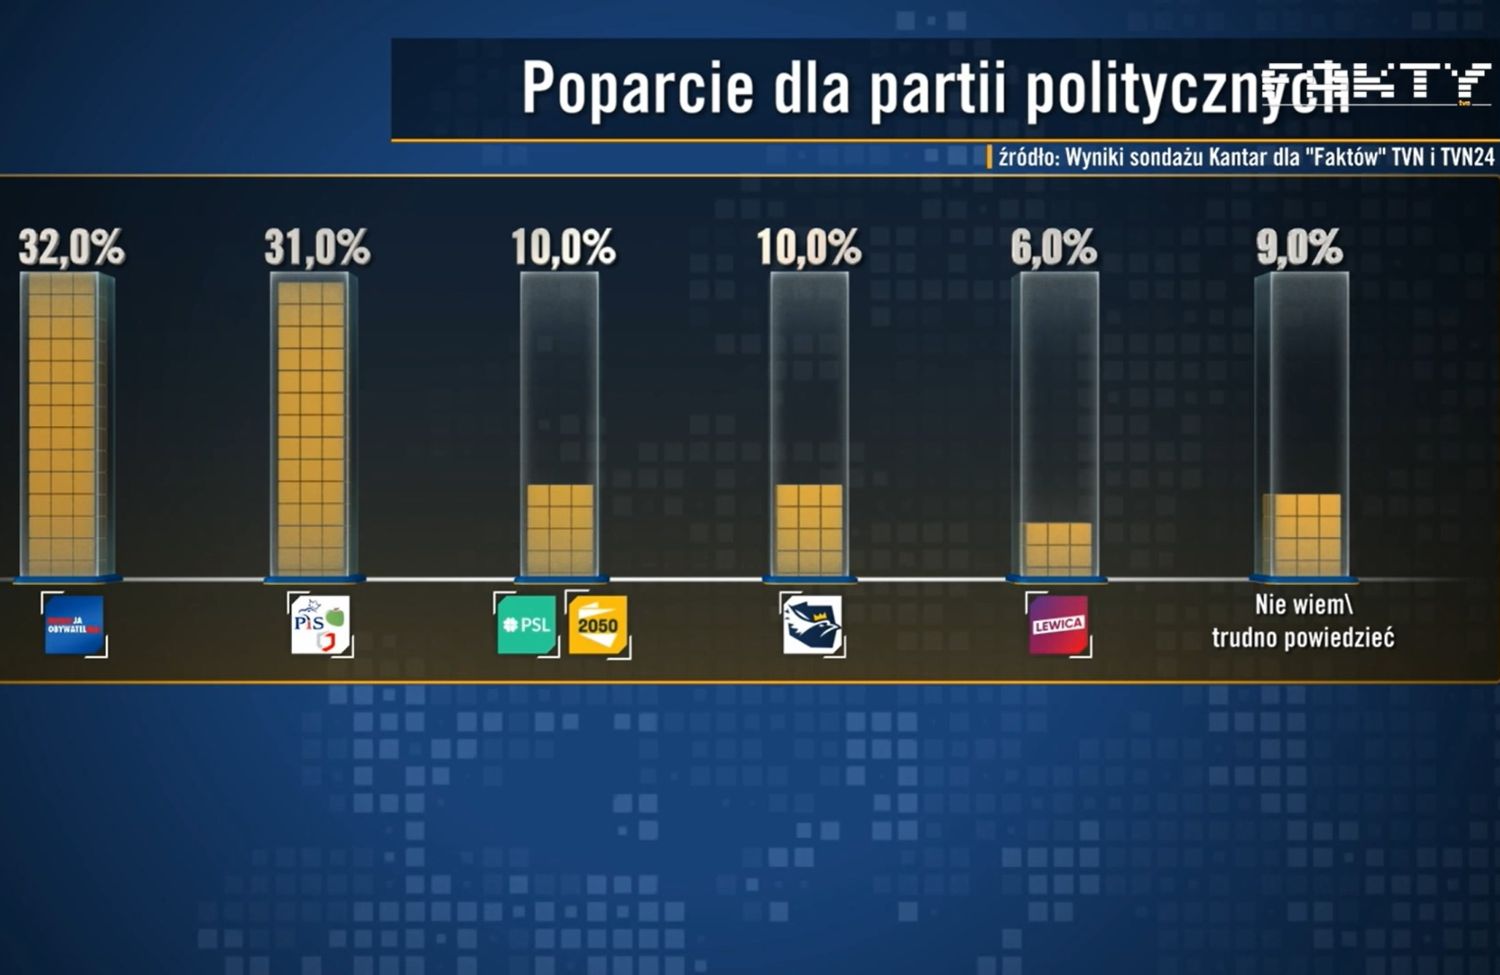 Wyniki sondażu Kantar dla "Faktów" TVN i TVN24.